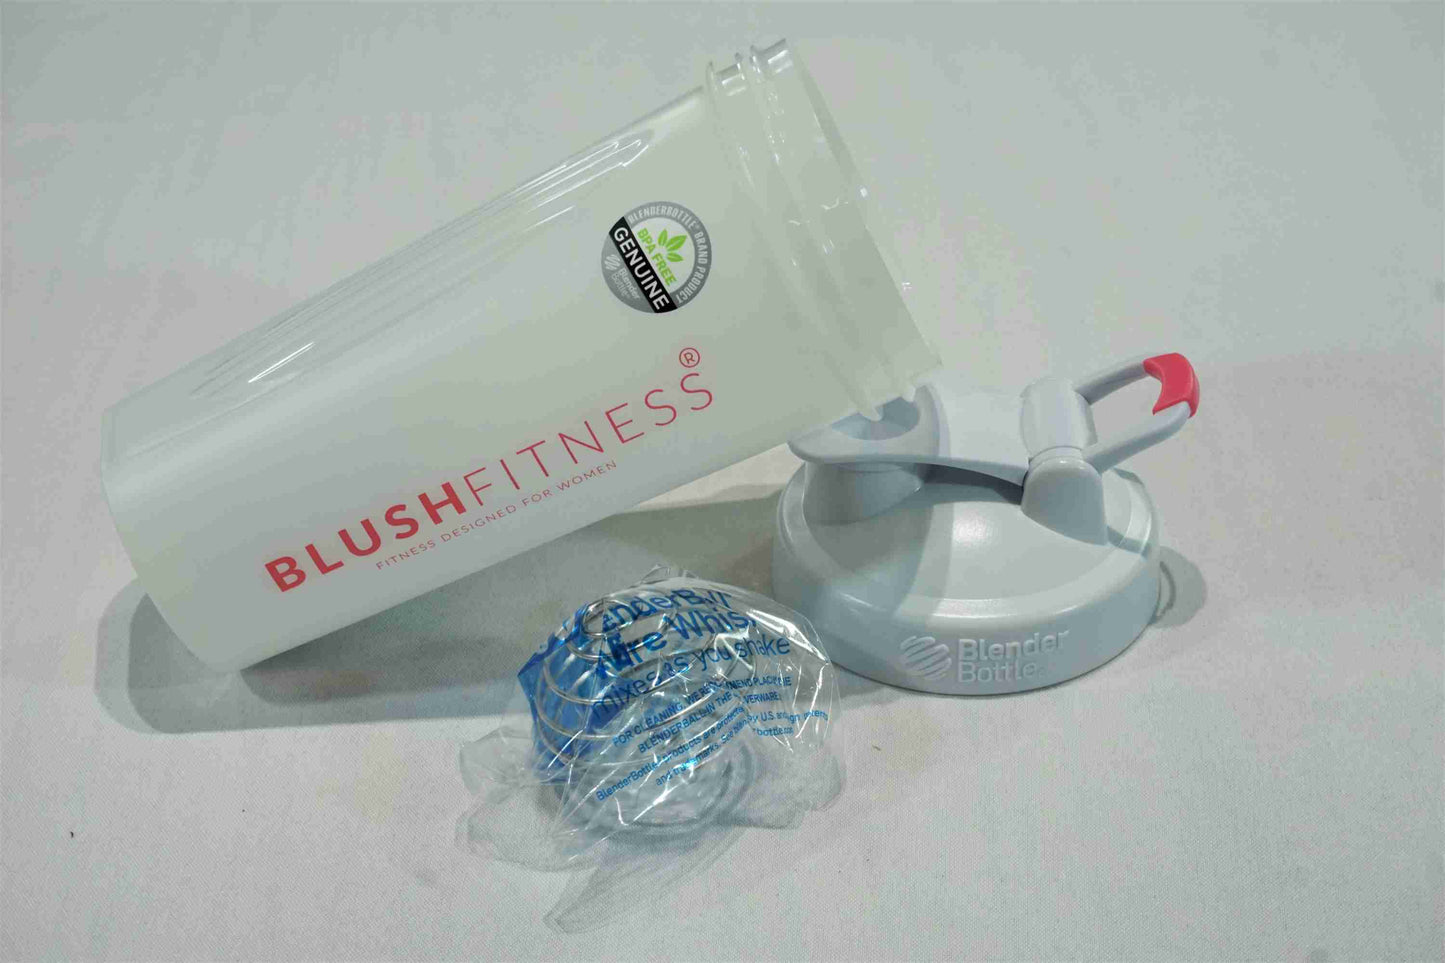 BLUSH Fitness - Blender Bottle - White